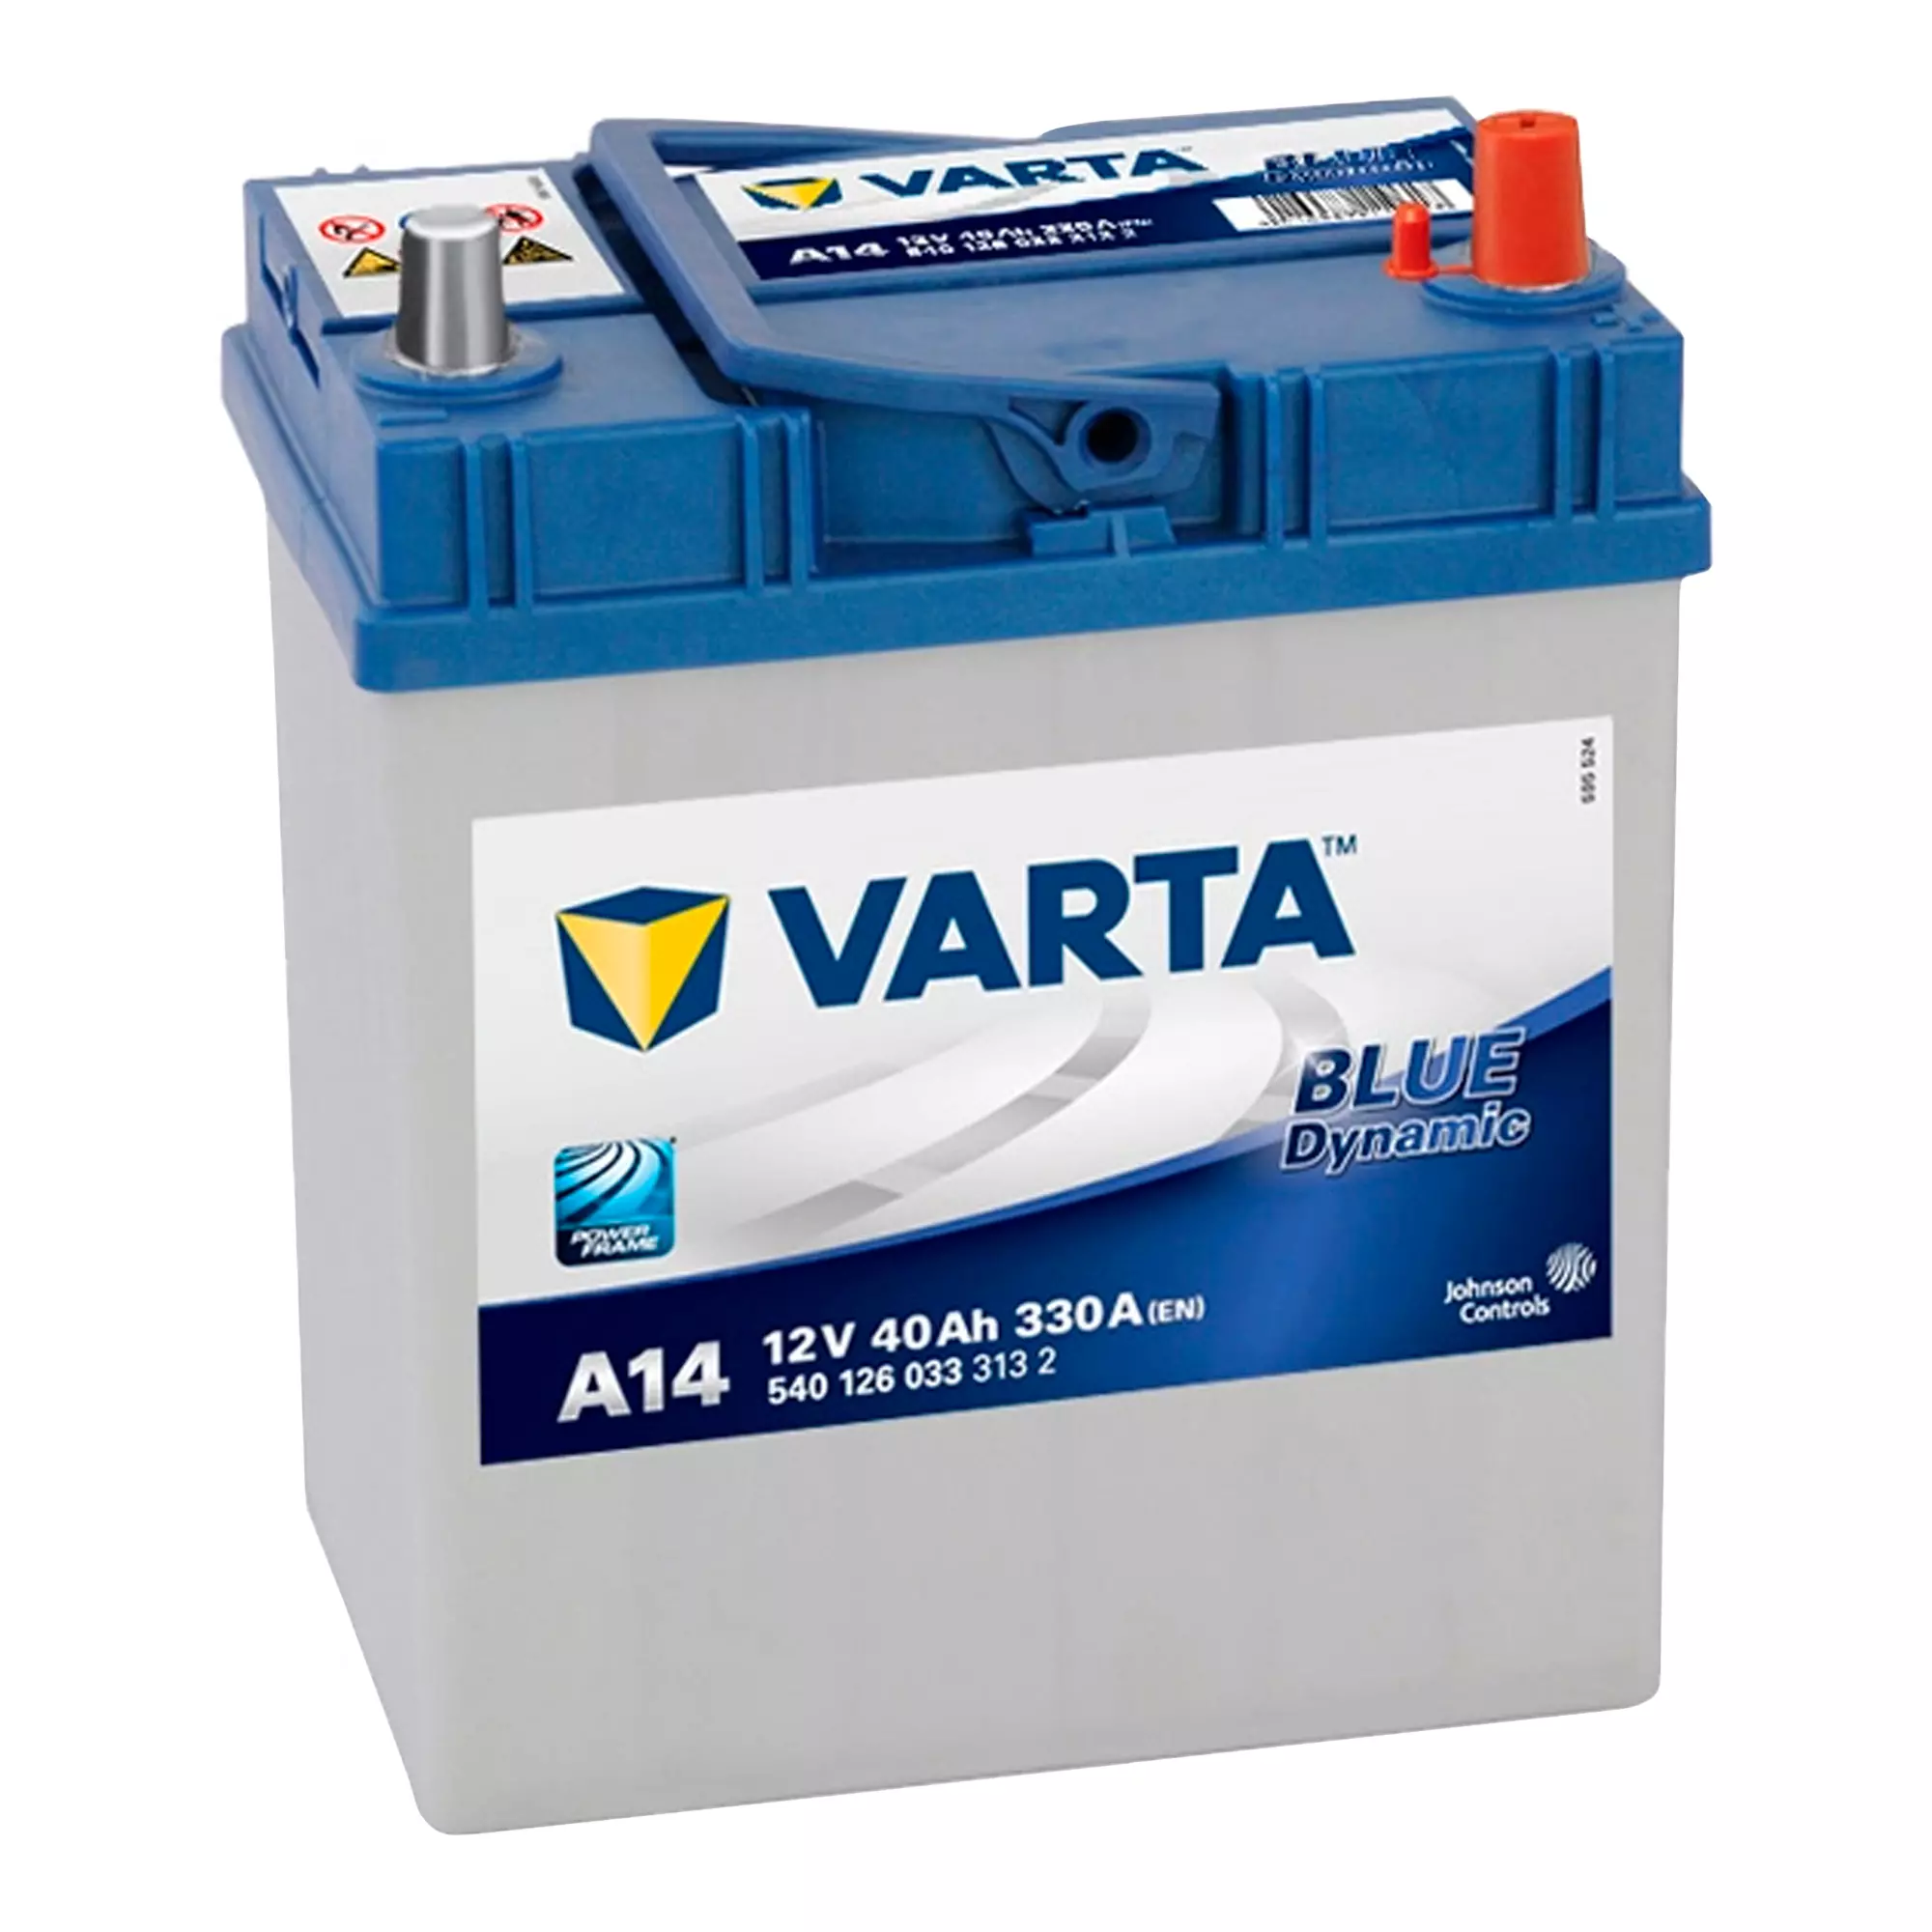 Автомобільний акумулятор Varta Blue Dynamic A14 6CT-40 АзЕ Asia (540 126 033)